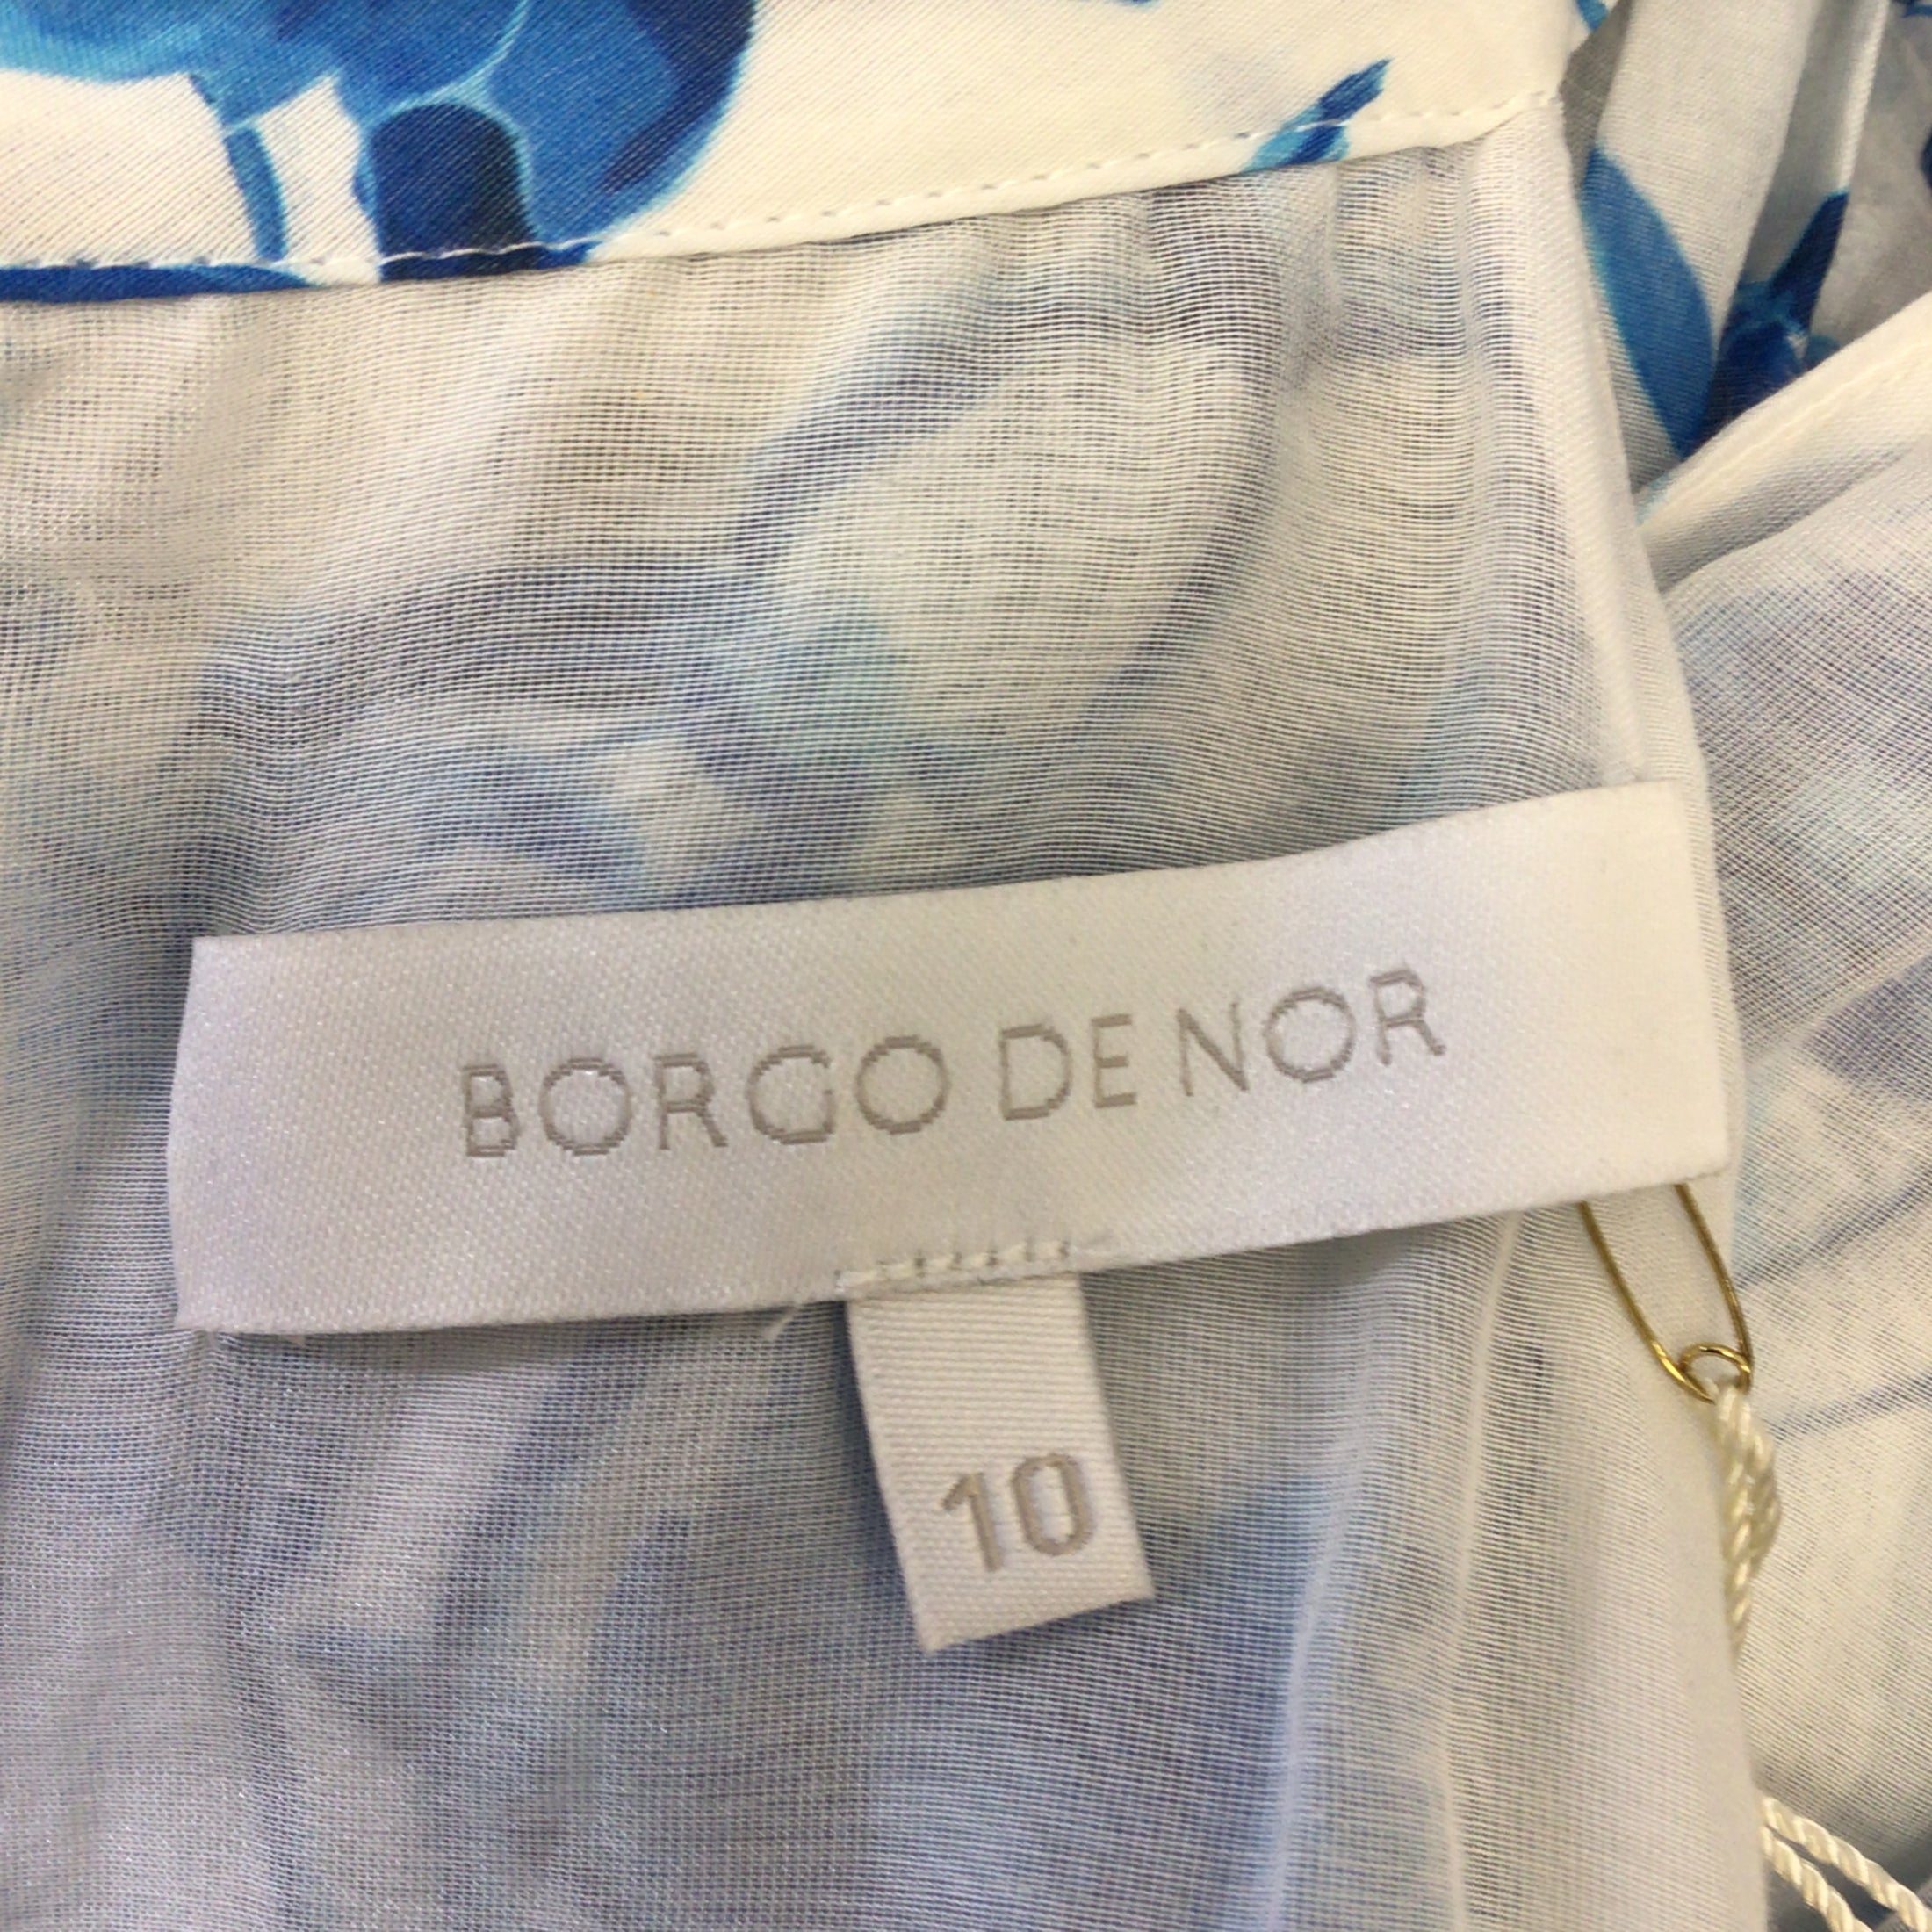 Borgo de Nor White / Blue Maggie Voile Tour de Jour Floral Printed Sleeveless Cotton Dress